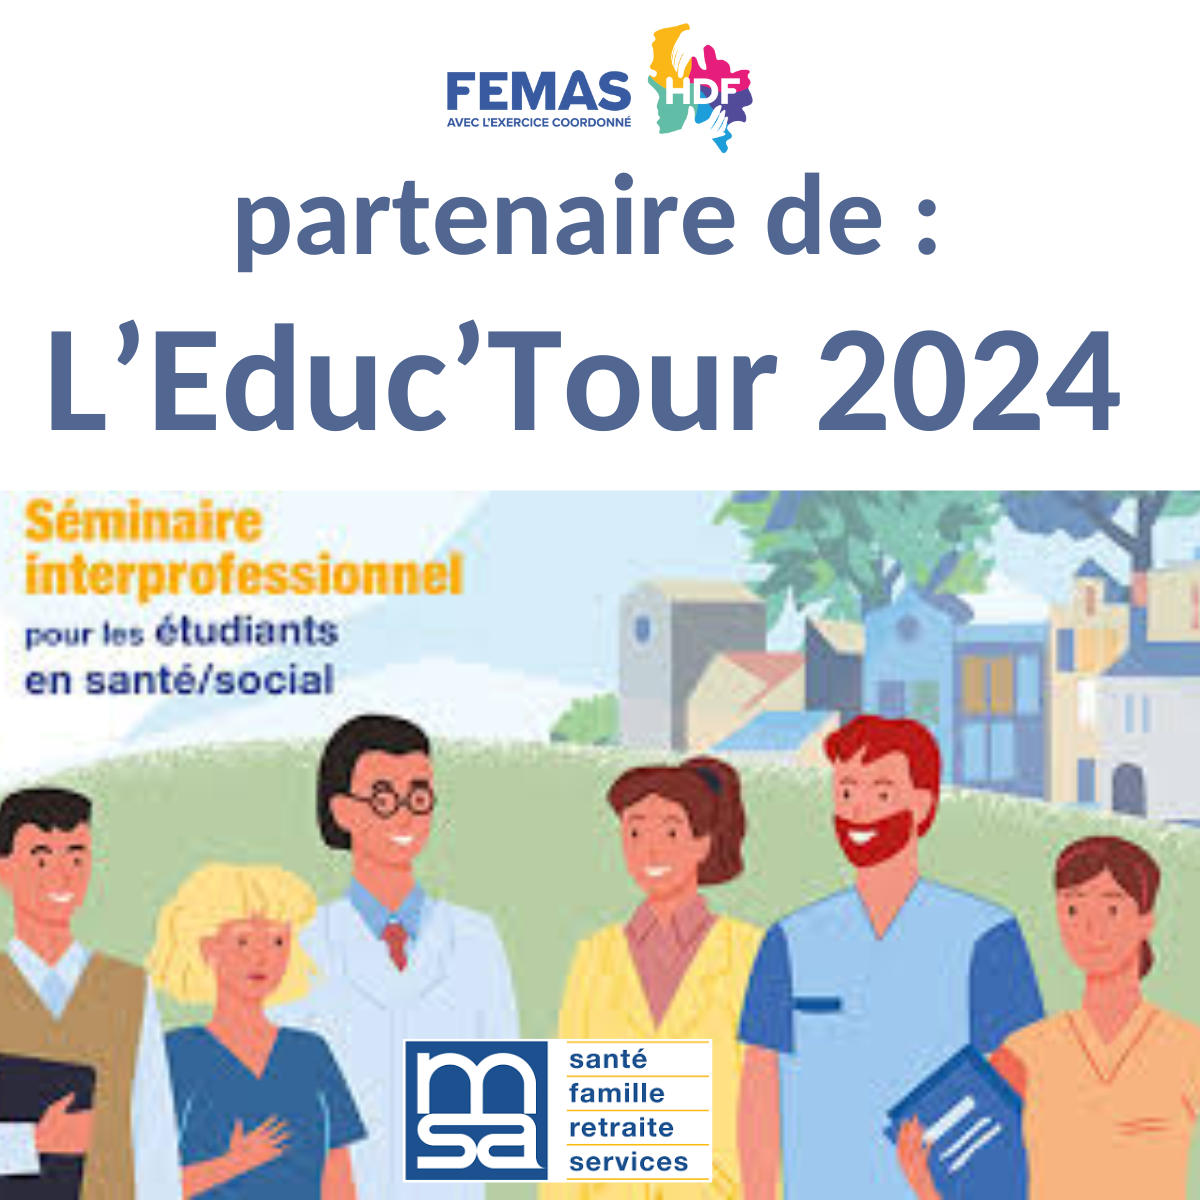 Lire la suite à propos de l’article La FEMAS HDF partenaire de l’EDUC’TOUR 2024 à la Faculté de pharmacie d’Amiens de l’Université Jules Verne et s’engage dans la sensibilisation des étudiants aux enjeux de l’exercice coordonné..